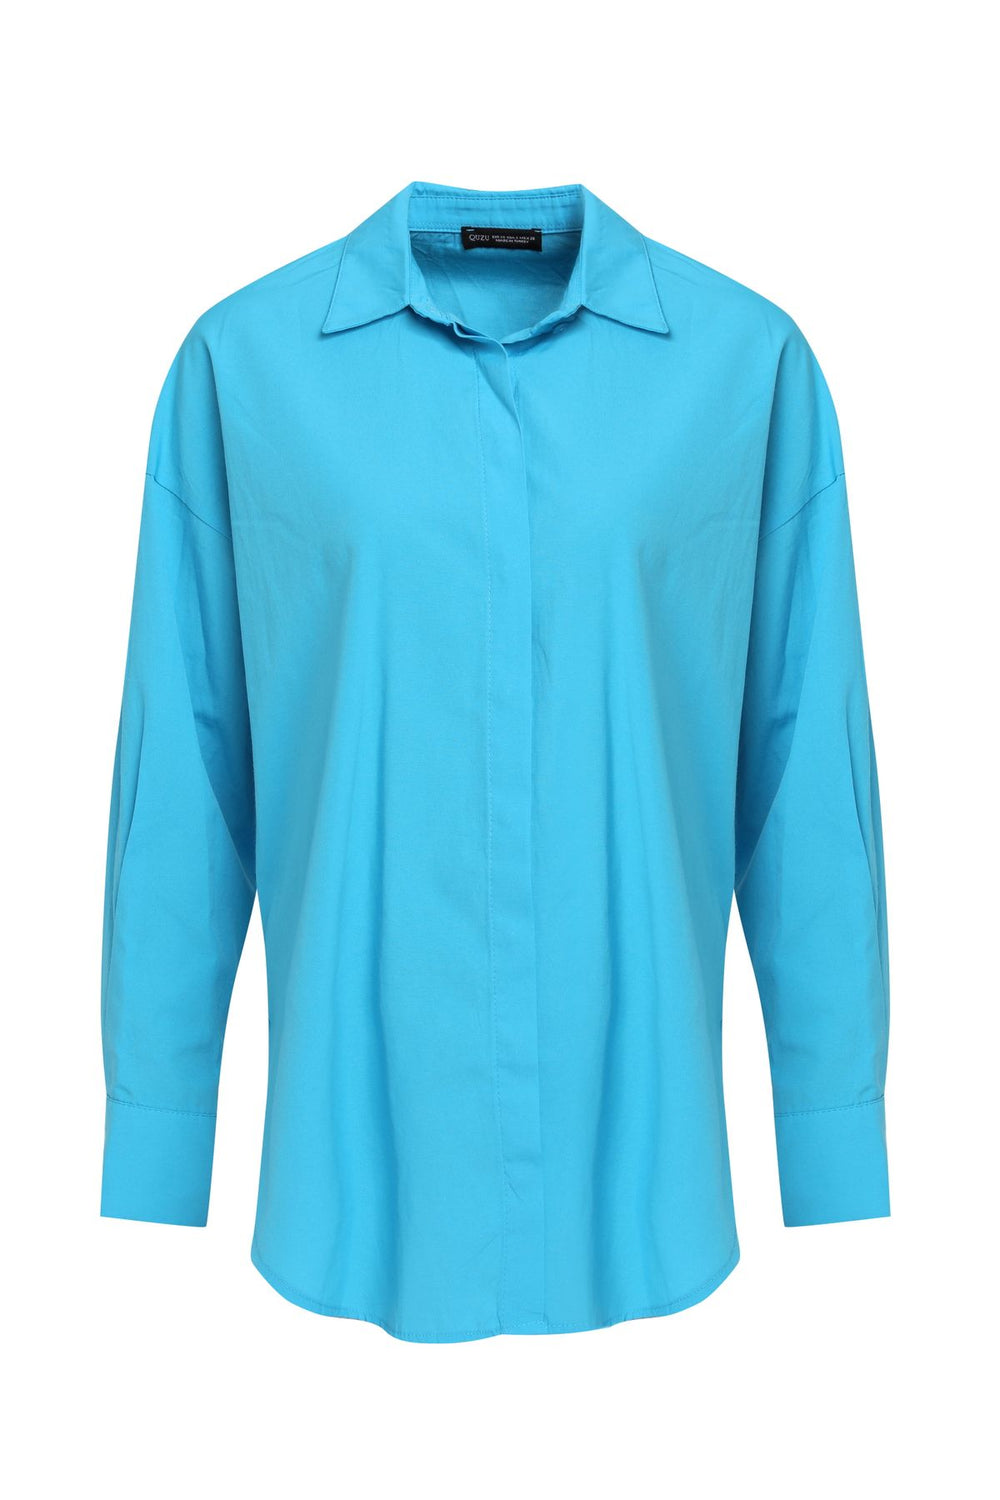 Oversize Shirt Turquoise